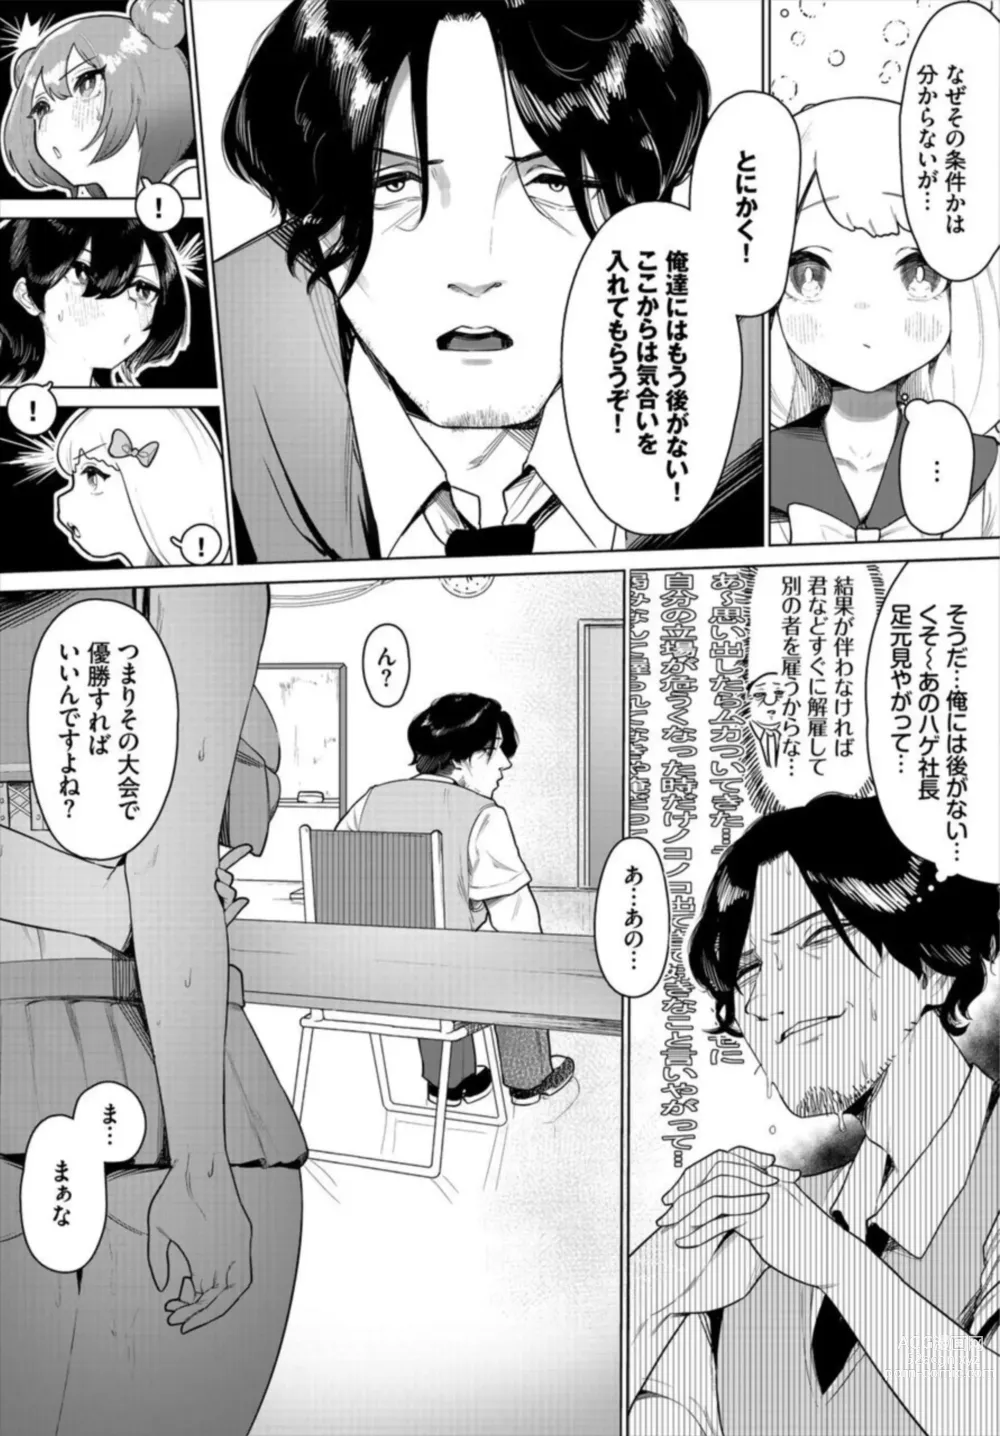 Page 9 of manga Nakadashi Idol Harem Life! 1